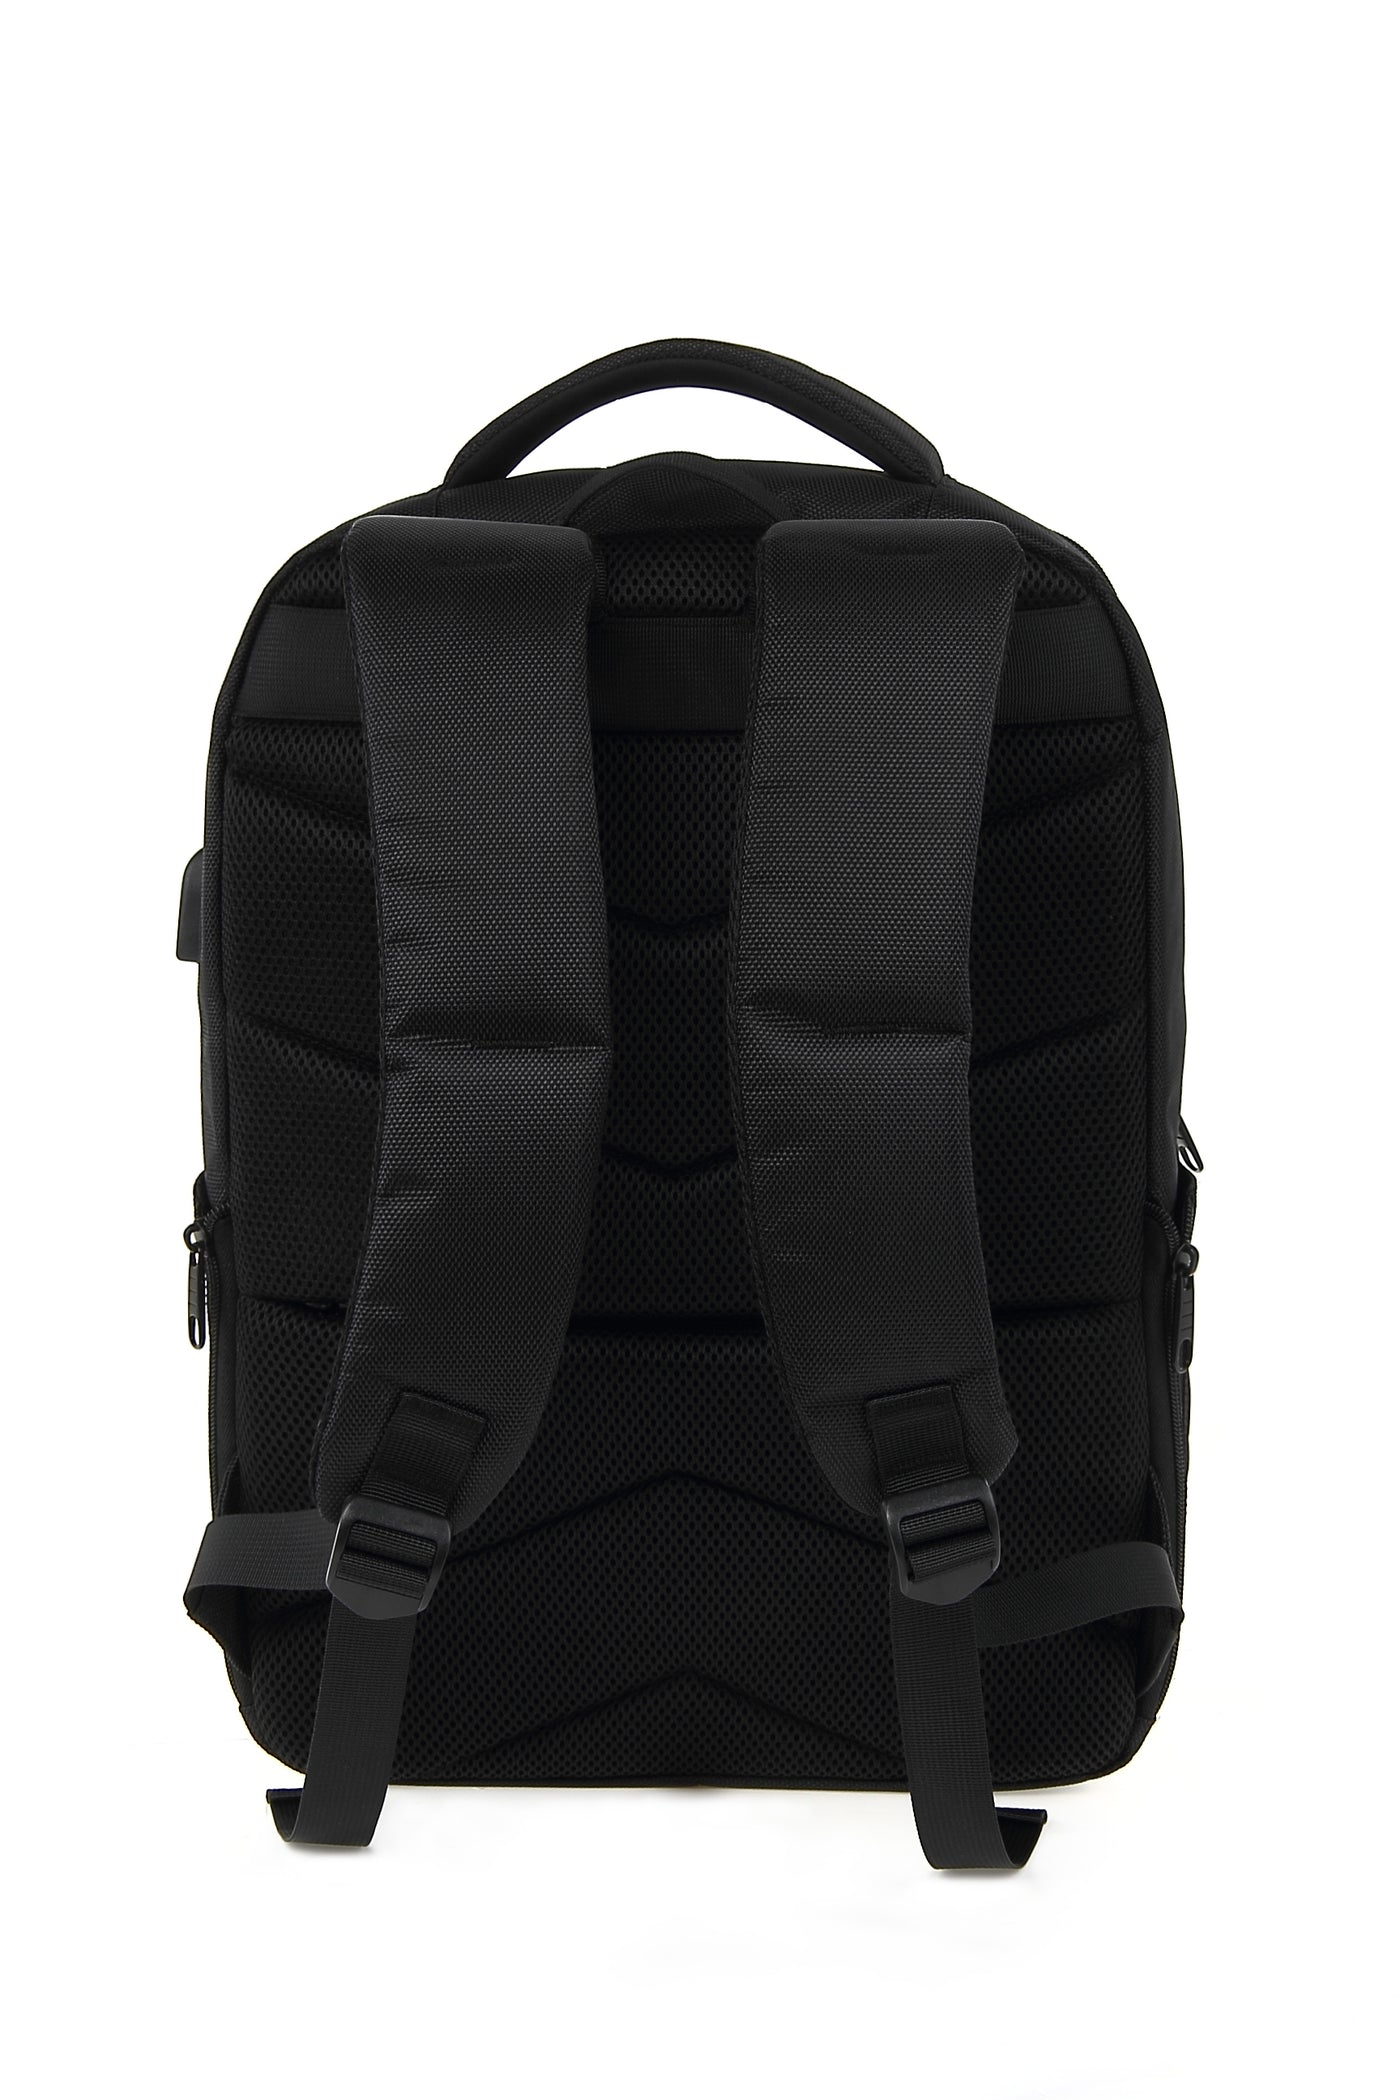 MAGIX 17" Tourer Laptop Backpack with Internal Pocket (BLACK)